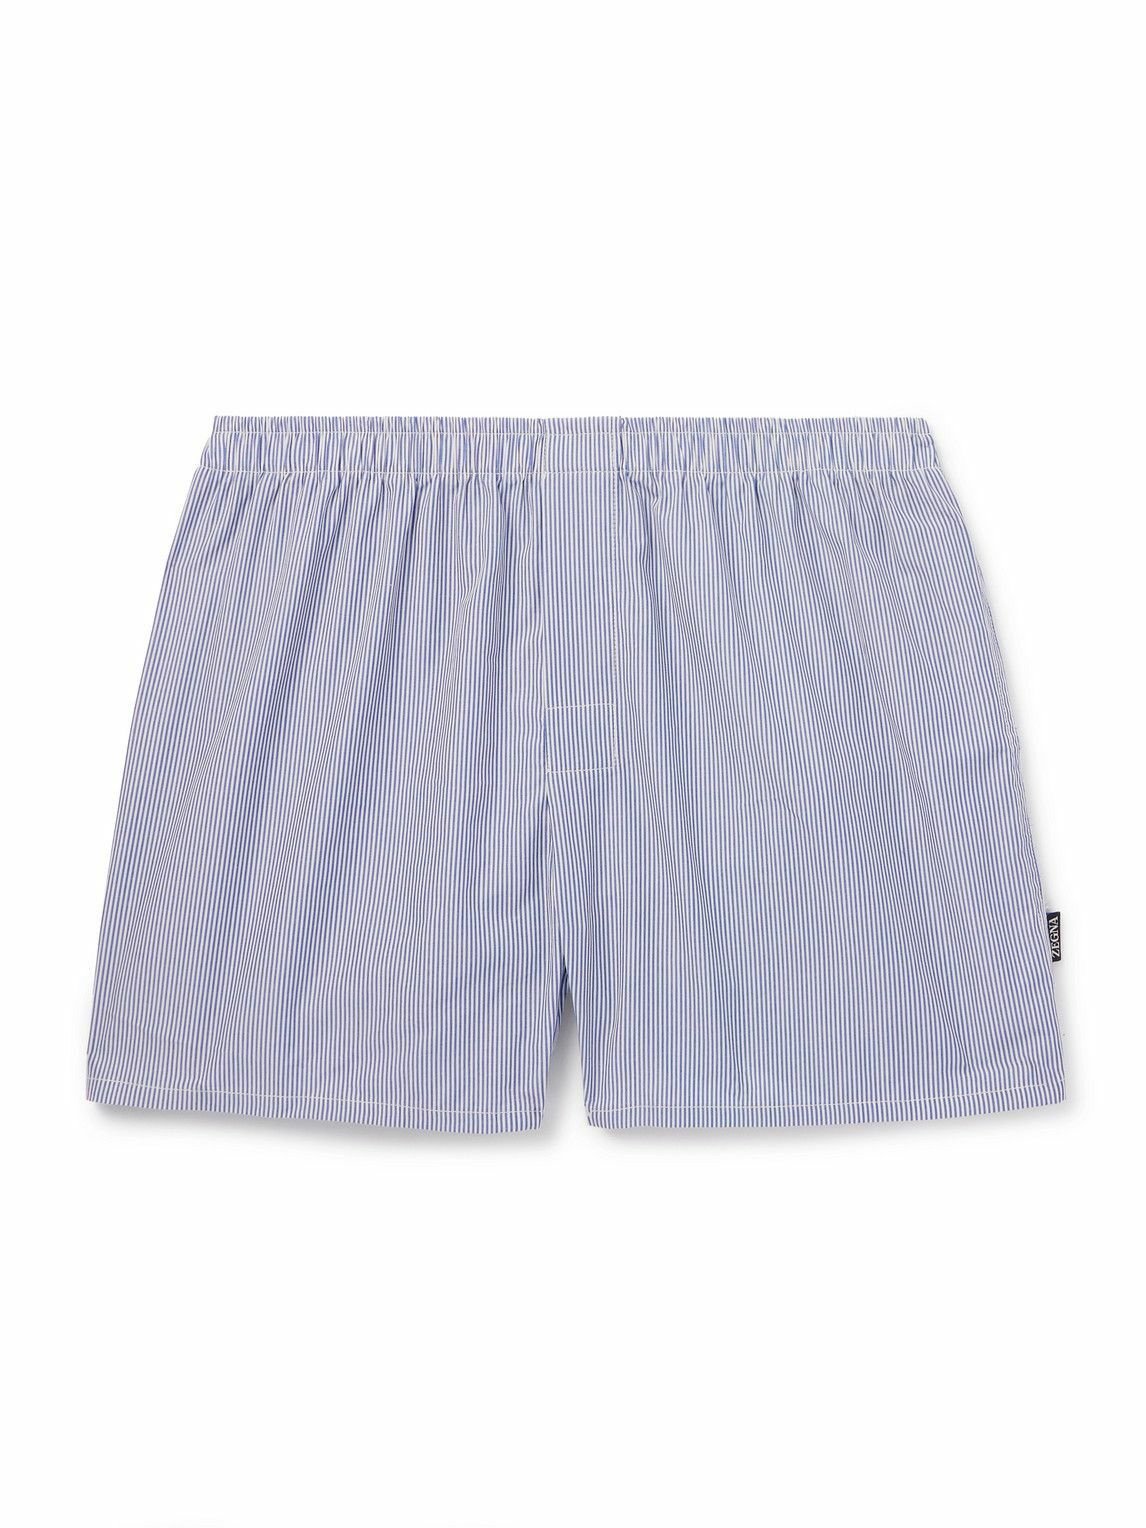 Zegna - Striped Cotton-Poplin Boxer Shorts - Blue Zegna